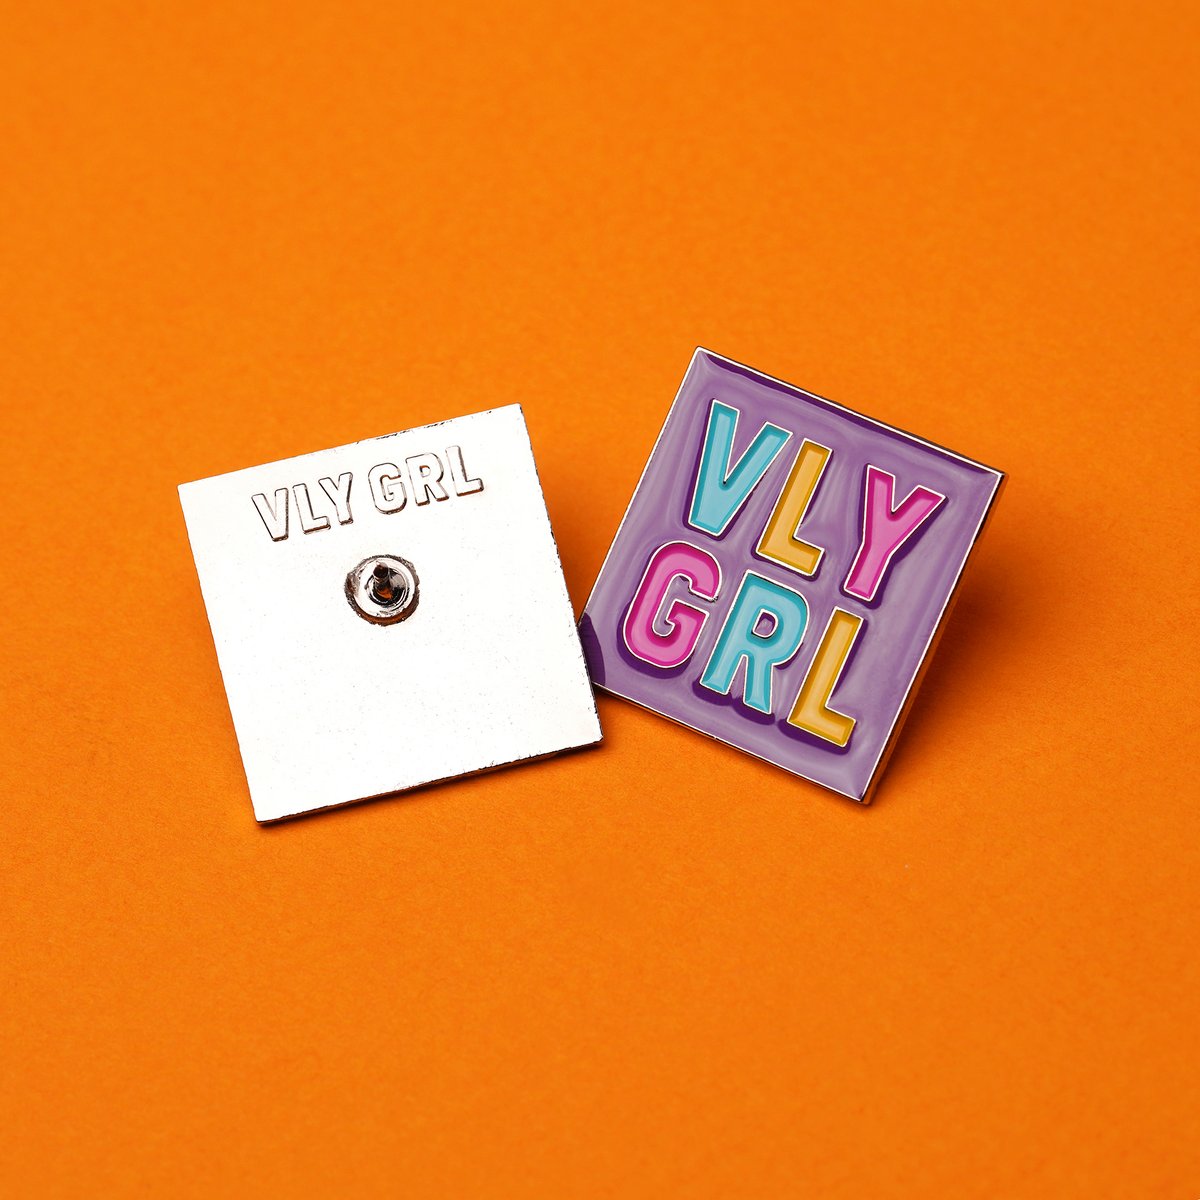 Image of VLY GRL Logo Pin